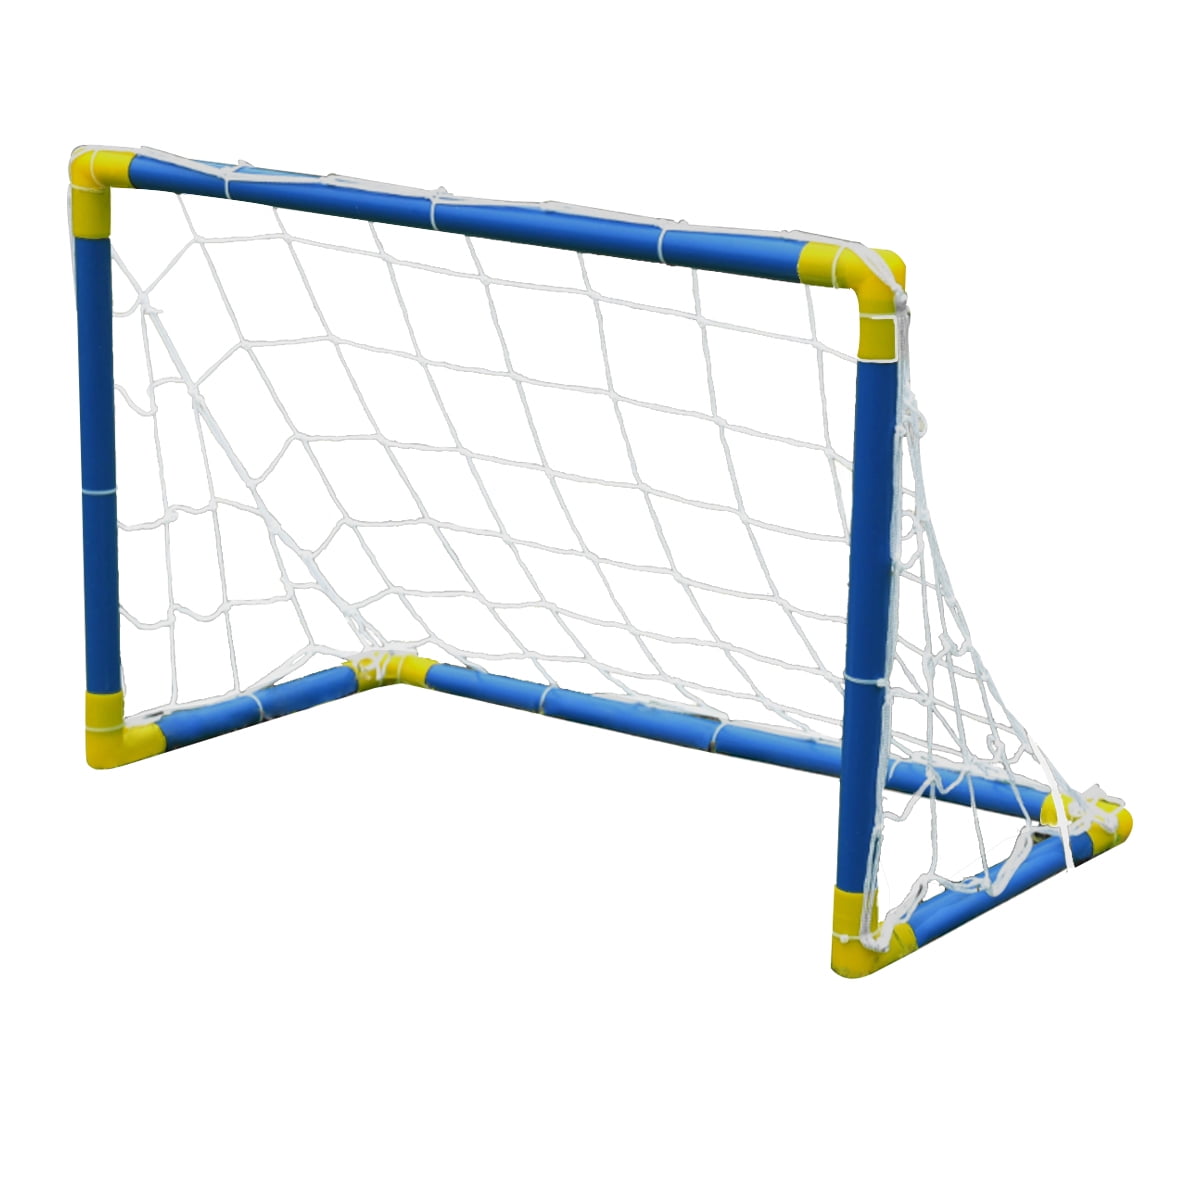 In/Outdoor Folding Football Soccer Ball Goal Post Net Pump Kids Sport Play Toy A 